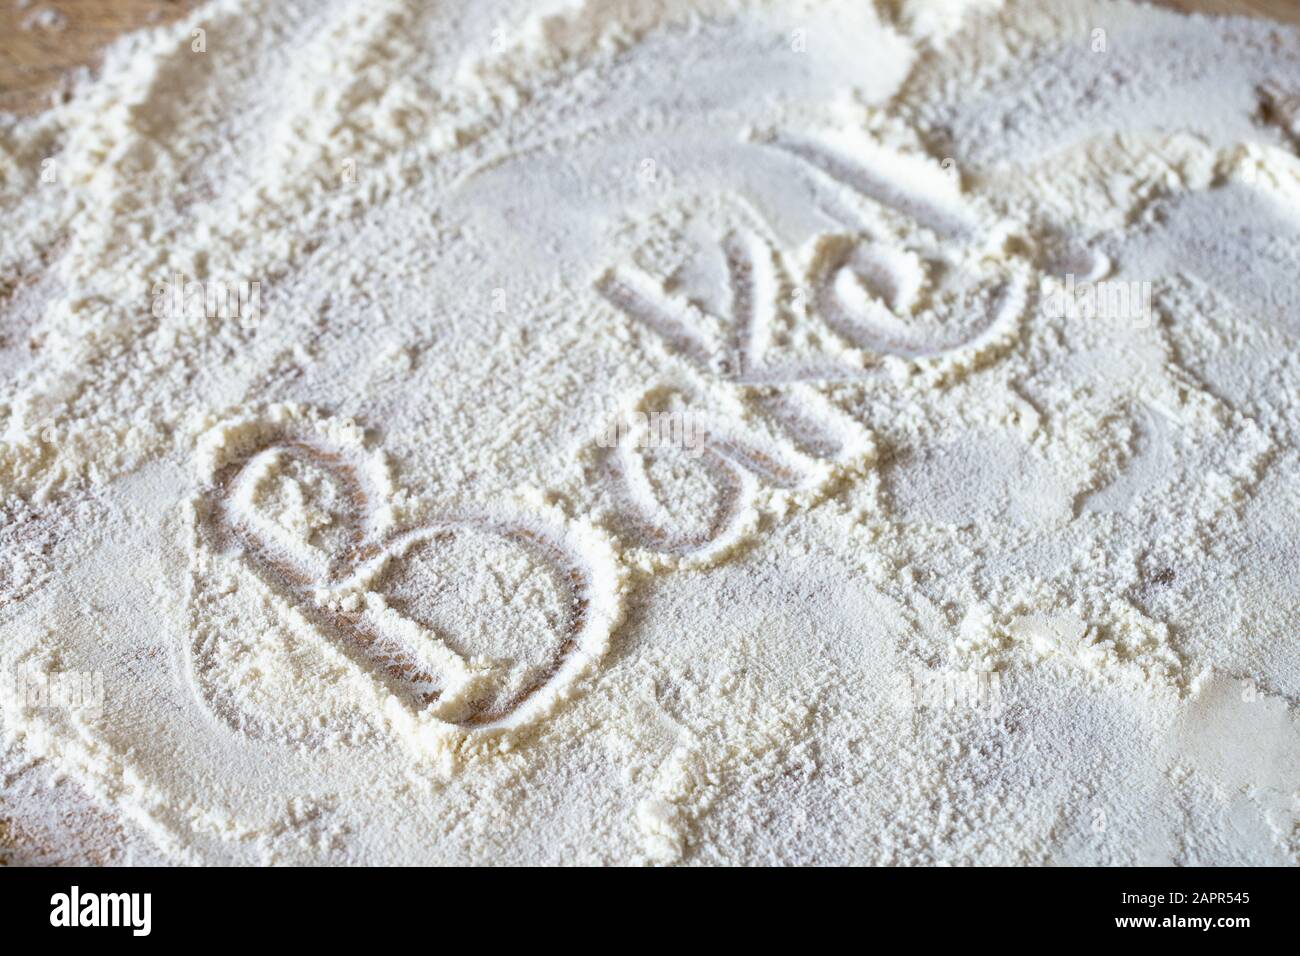 La palabra 'Bake!' escrita en harina desordenada dispersada revelando tablero de madera abajo. Foto de stock